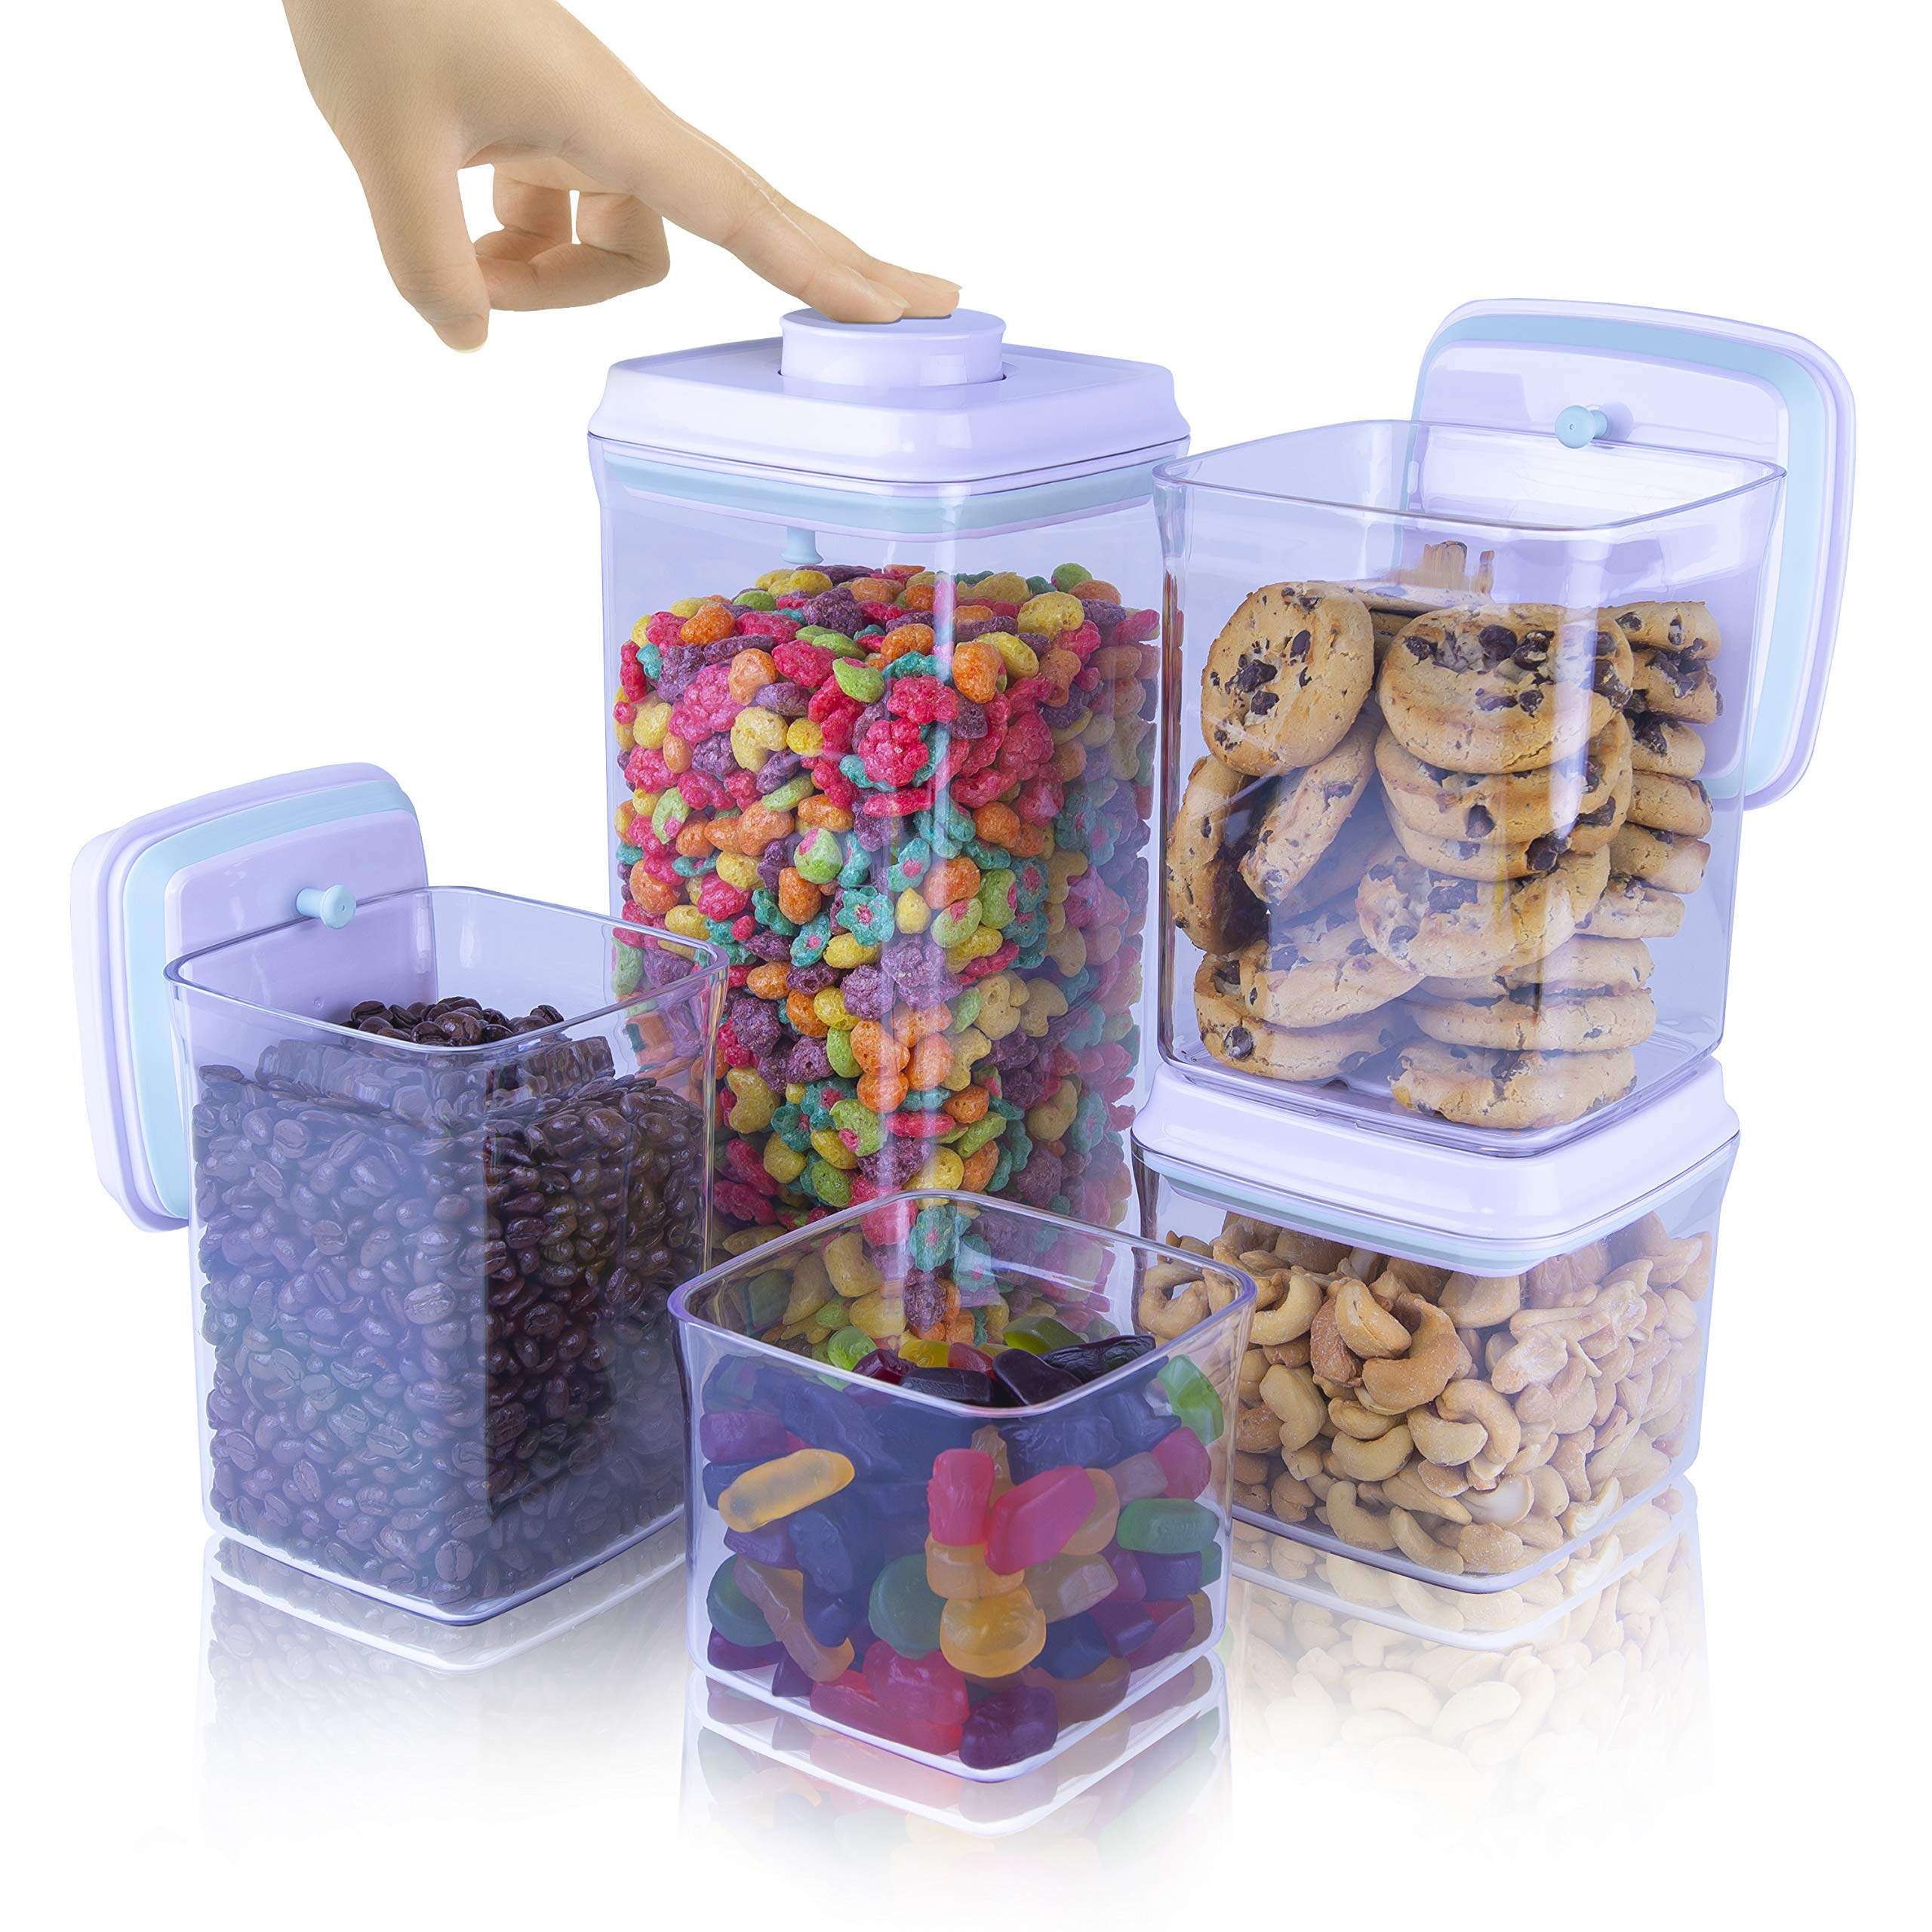 iChewie - BopTop (5pc Set) Airtight Food Storage Container